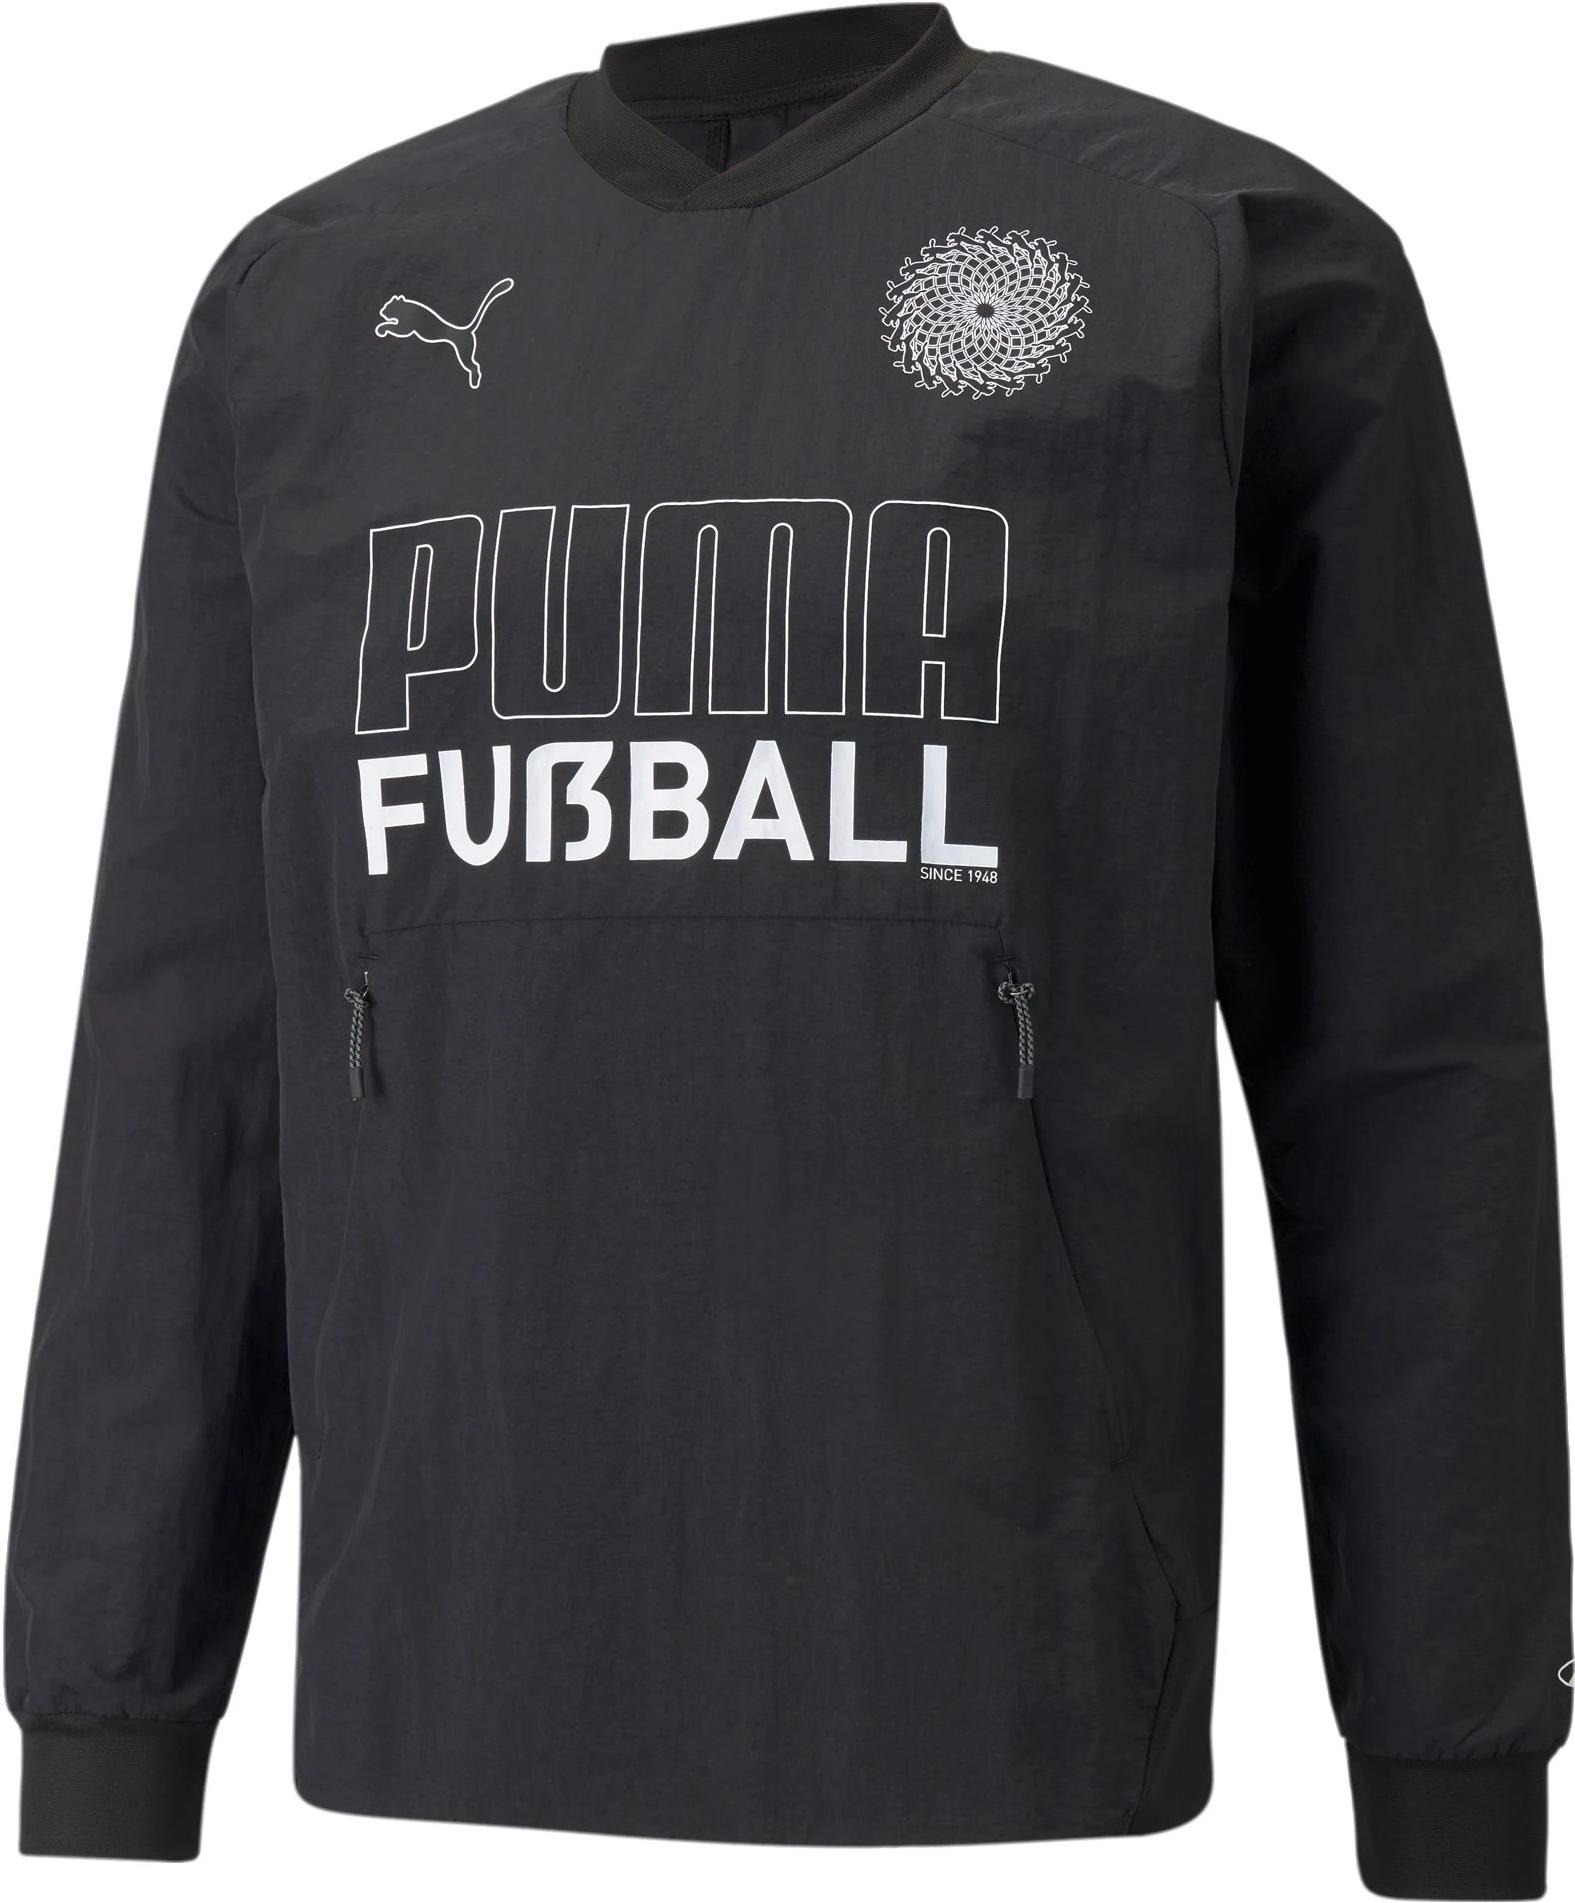 Långärmad T-shirt Puma FUßBALL KING Drill Top